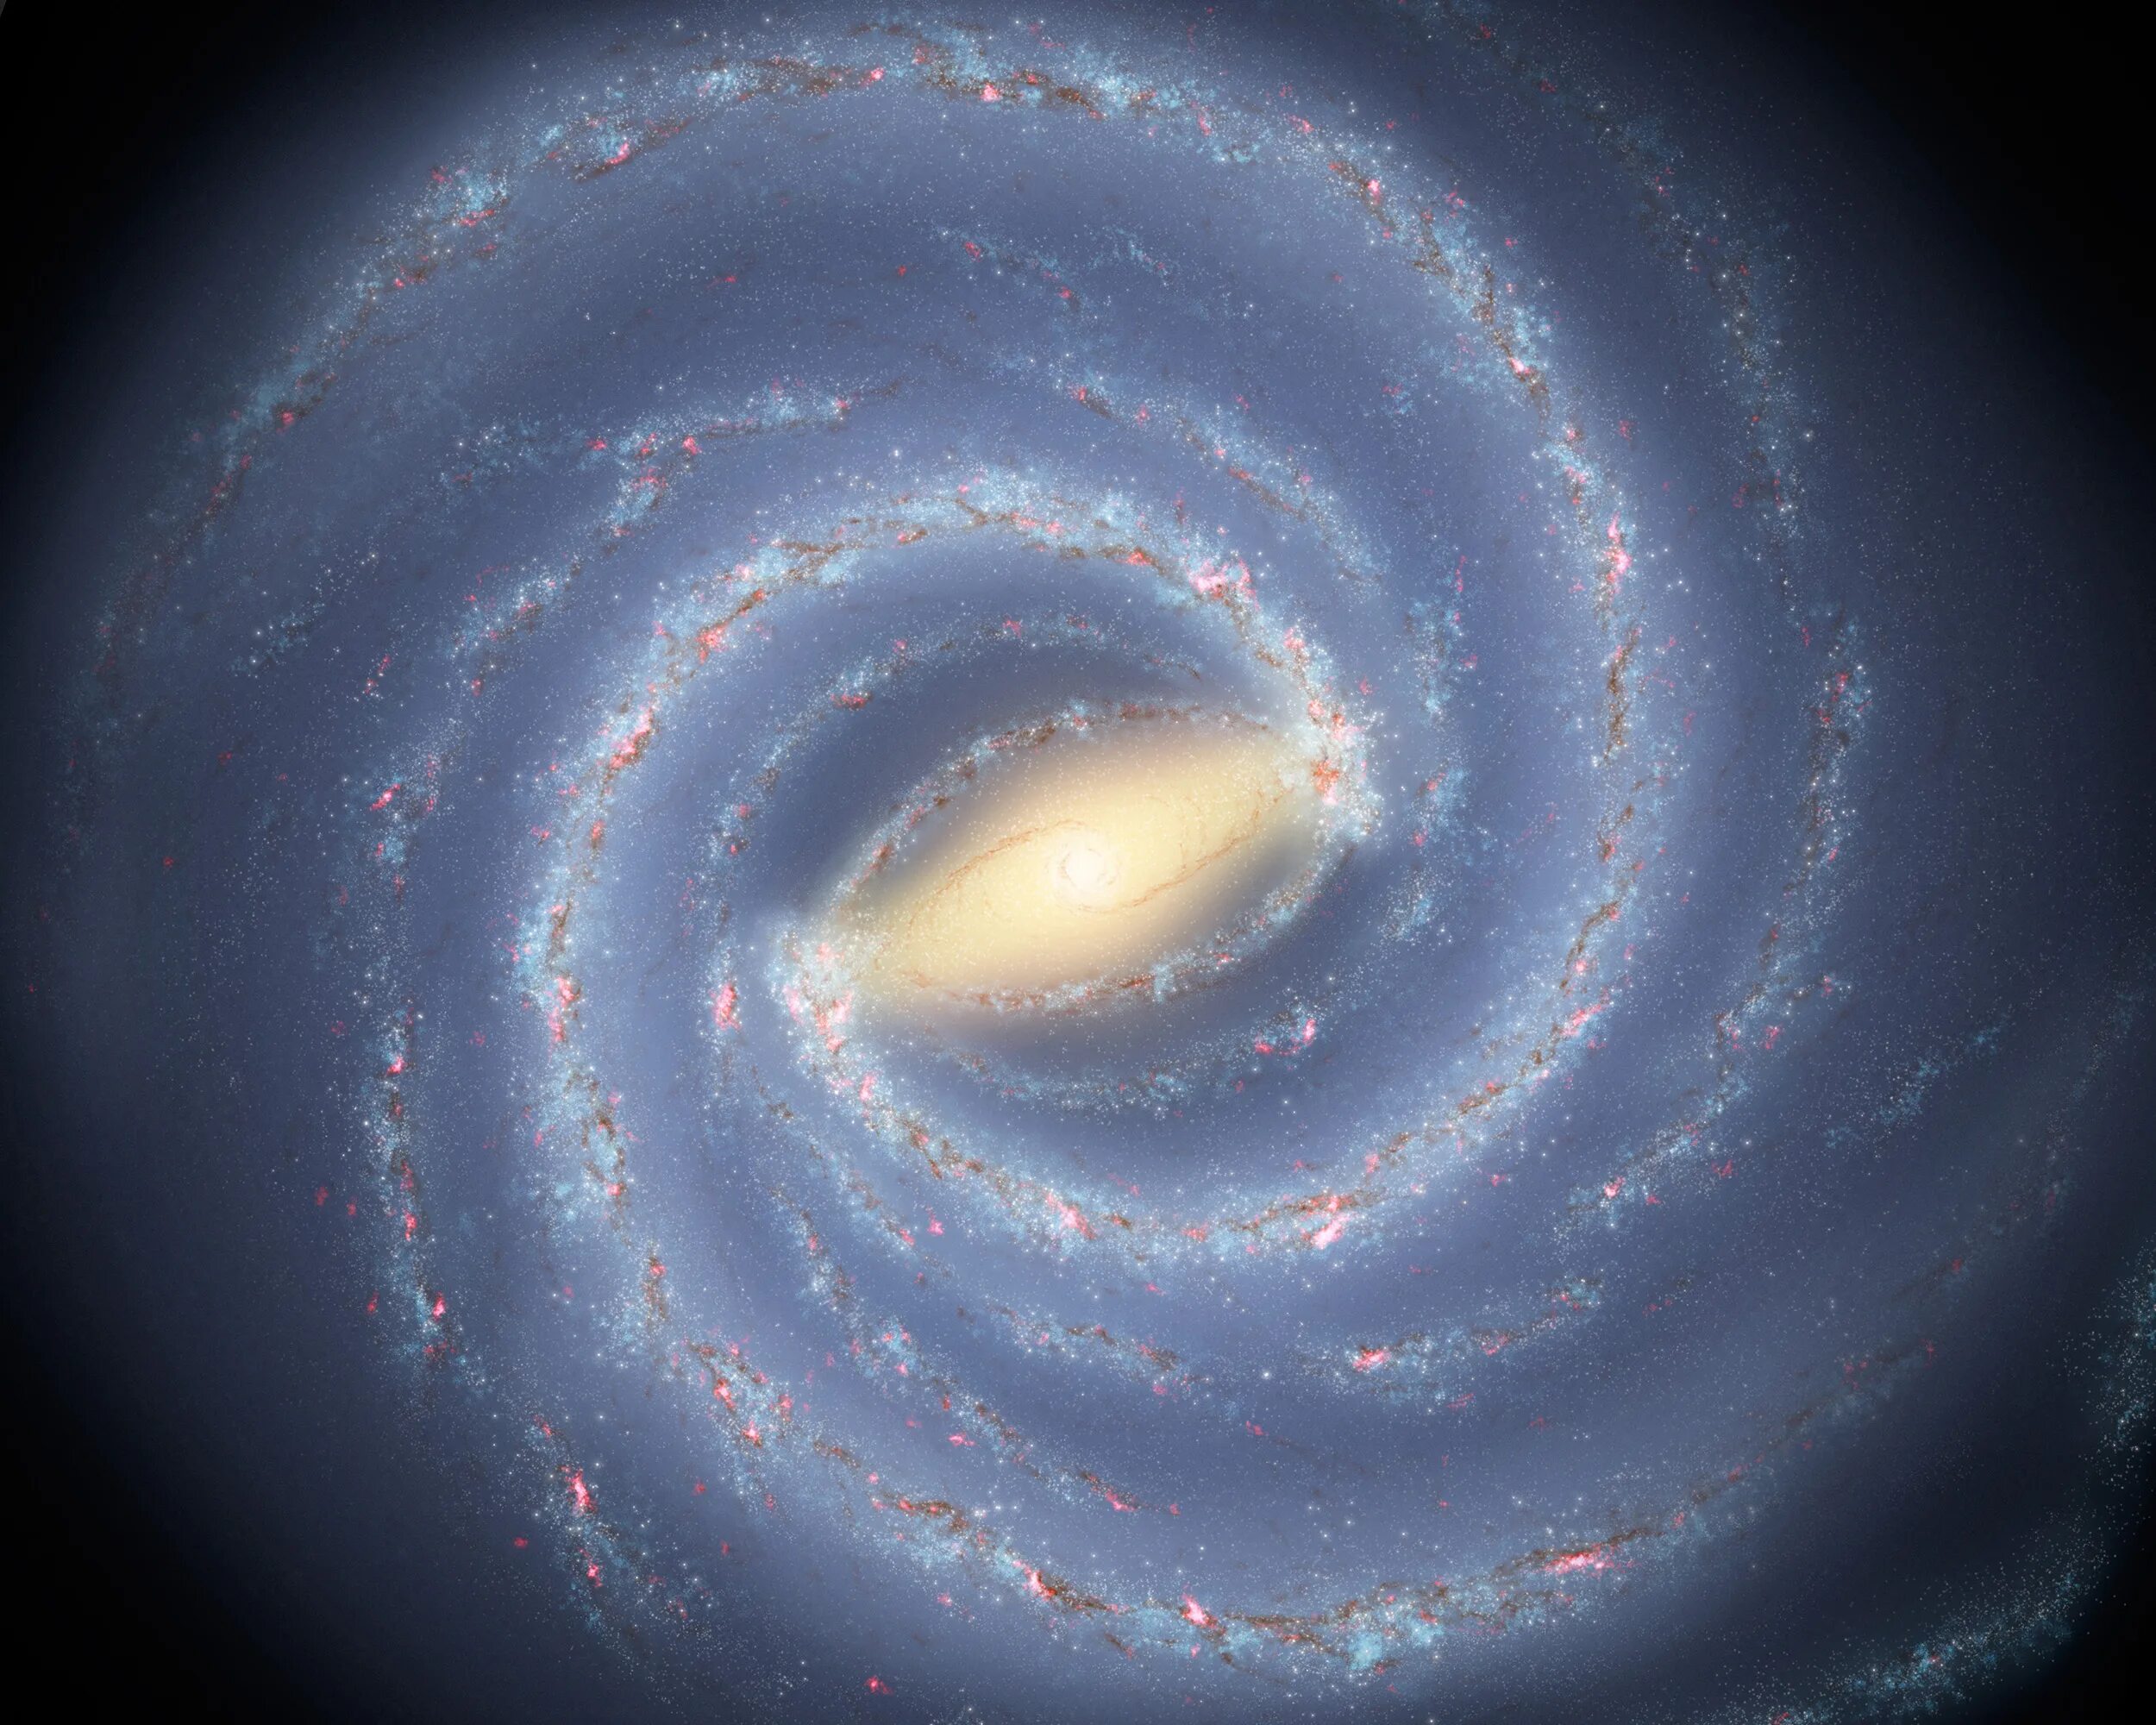 Галактика млечный путь движение звезд в галактике. Наша Галактика Млечный путь. Галактика Млечный путь Солнечная система. Спиралевидная Галактика Млечный путь. Галактика Млечный путь планеты солнечной системы.